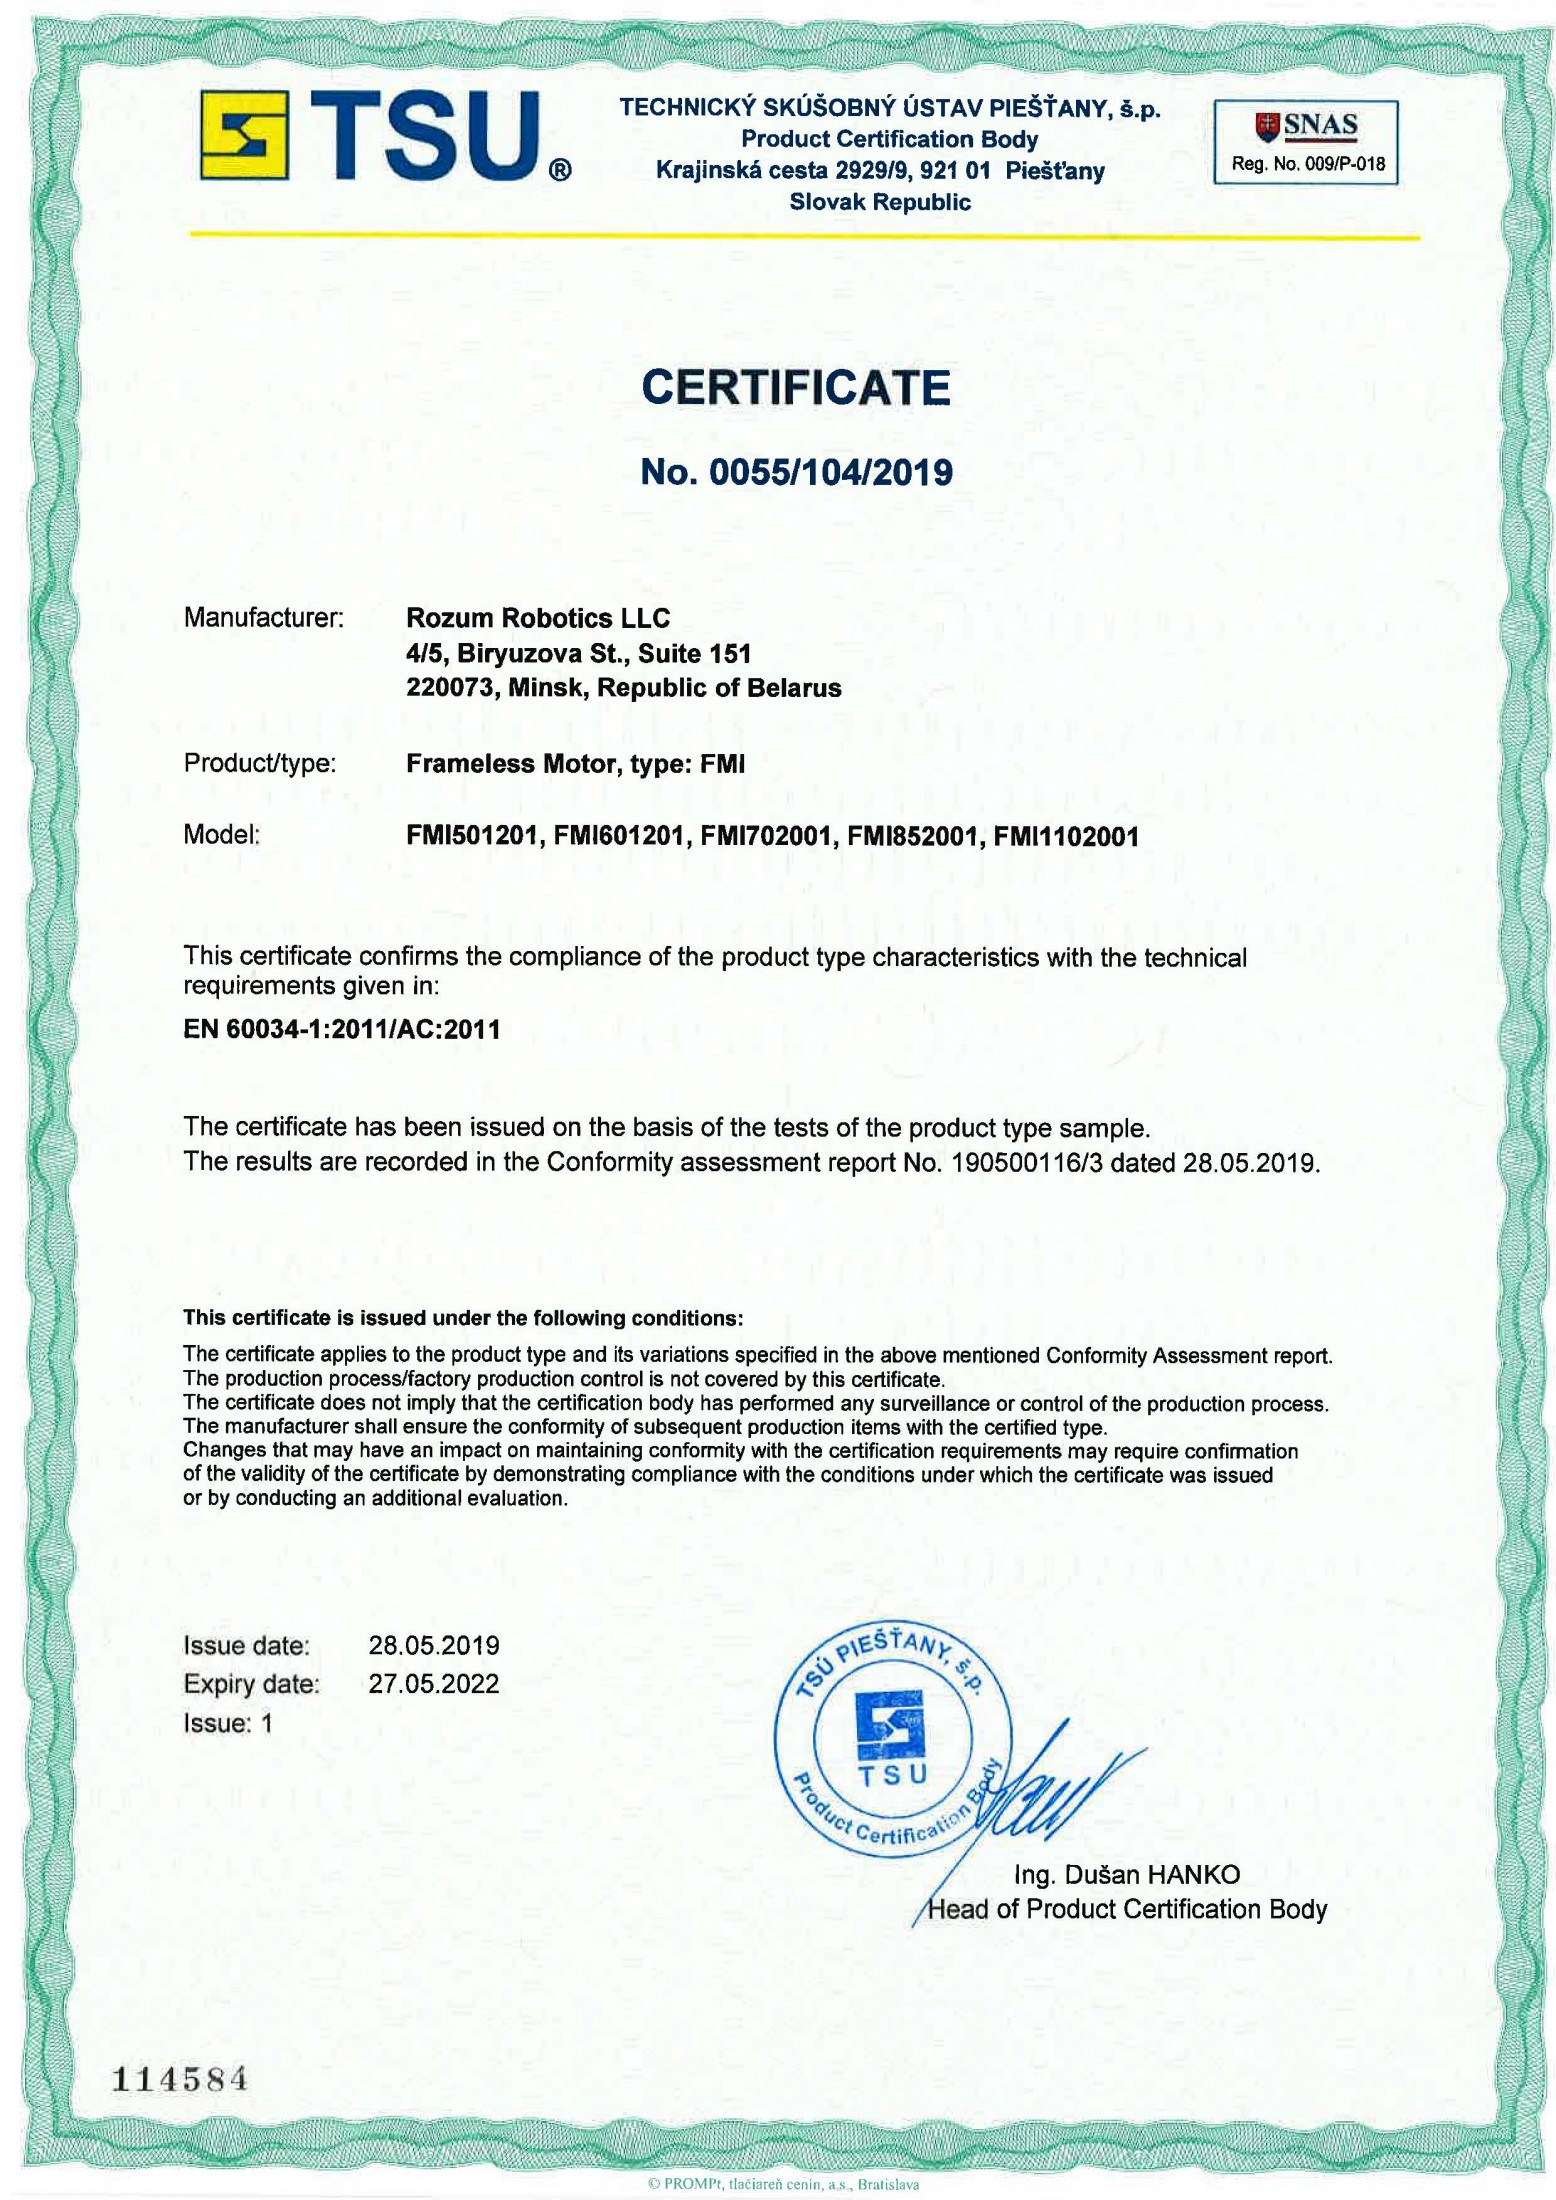 EU/CE Certificates Received